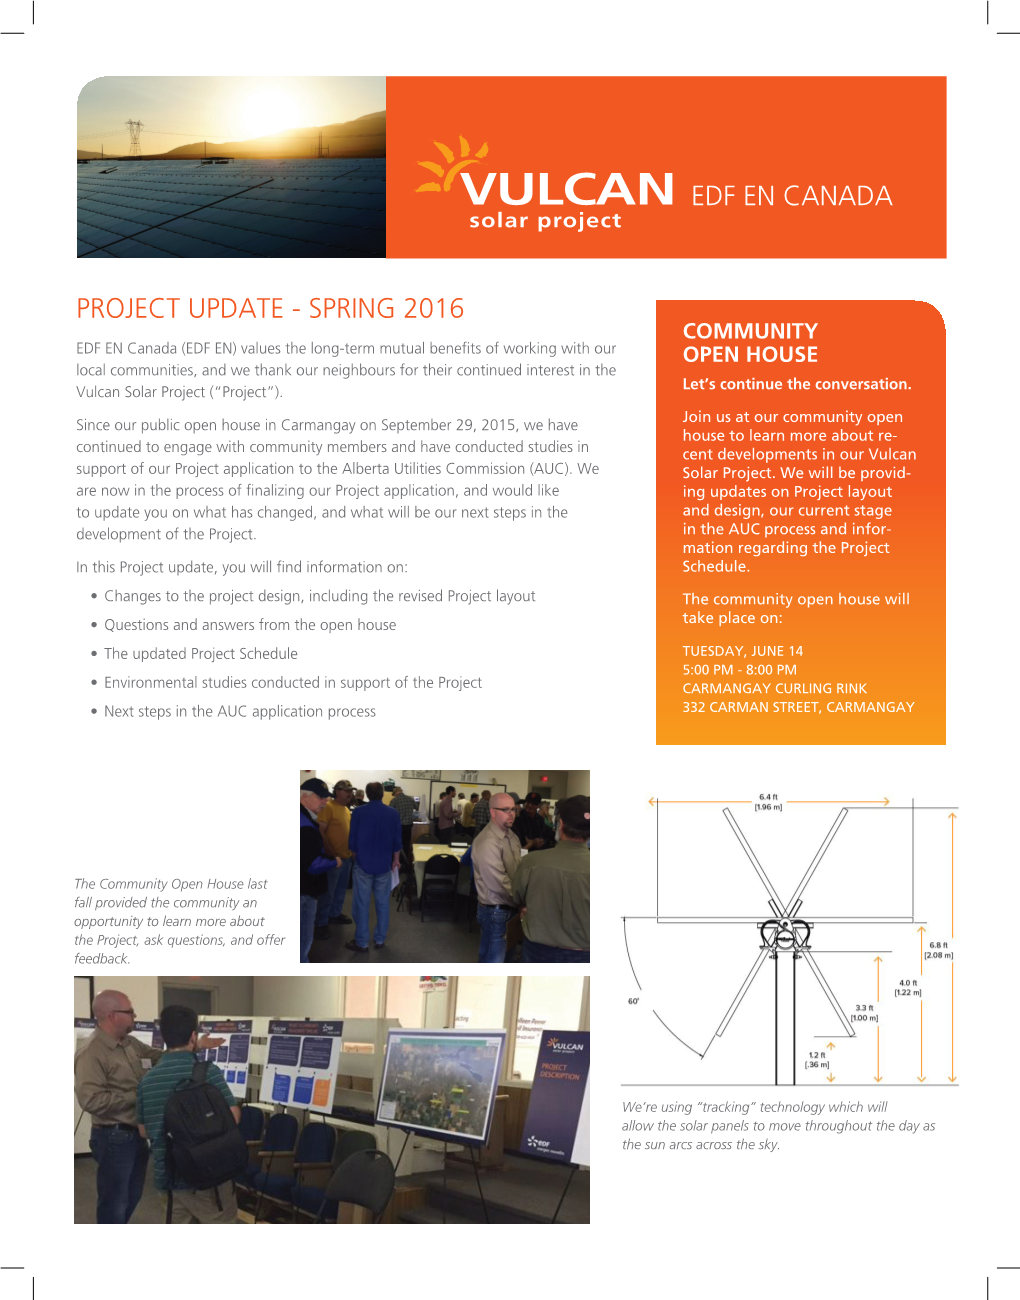 VULCAN EDF EN CANADA Solar Project